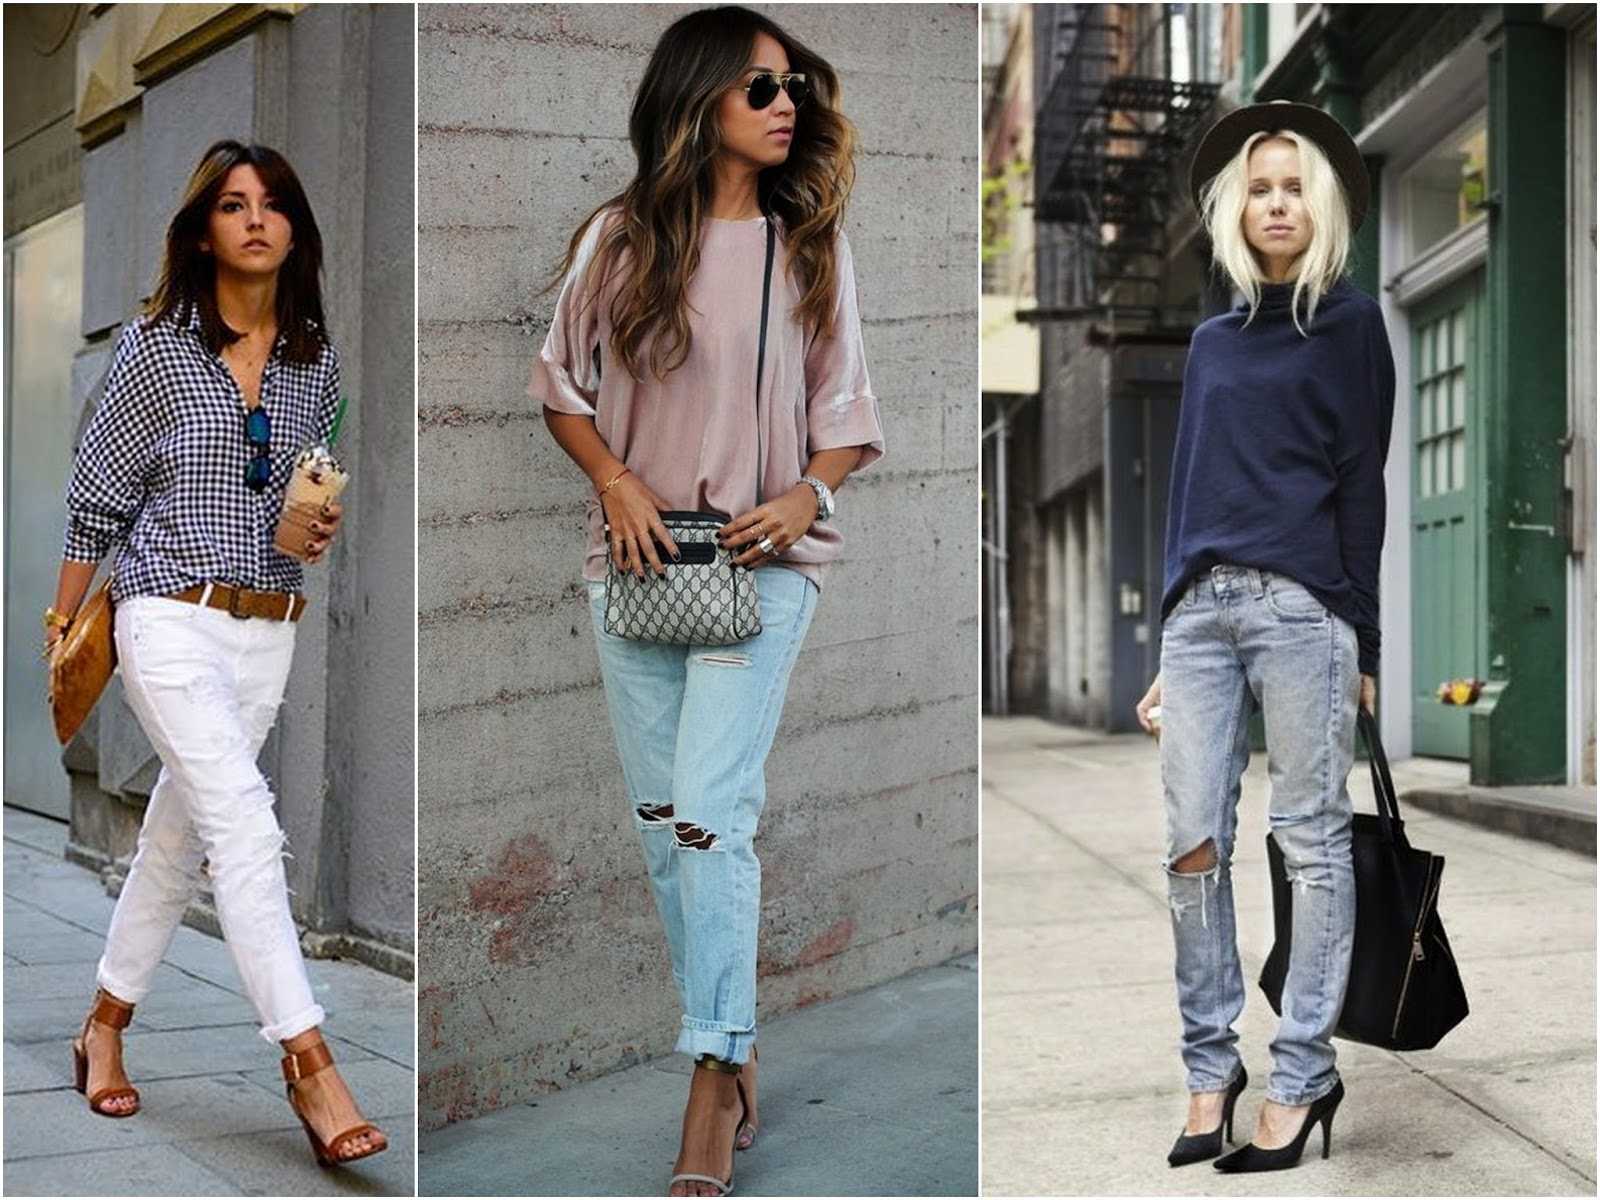 Мужской стиль в женской версии: 25 стильных фото с джинсами бойфренды